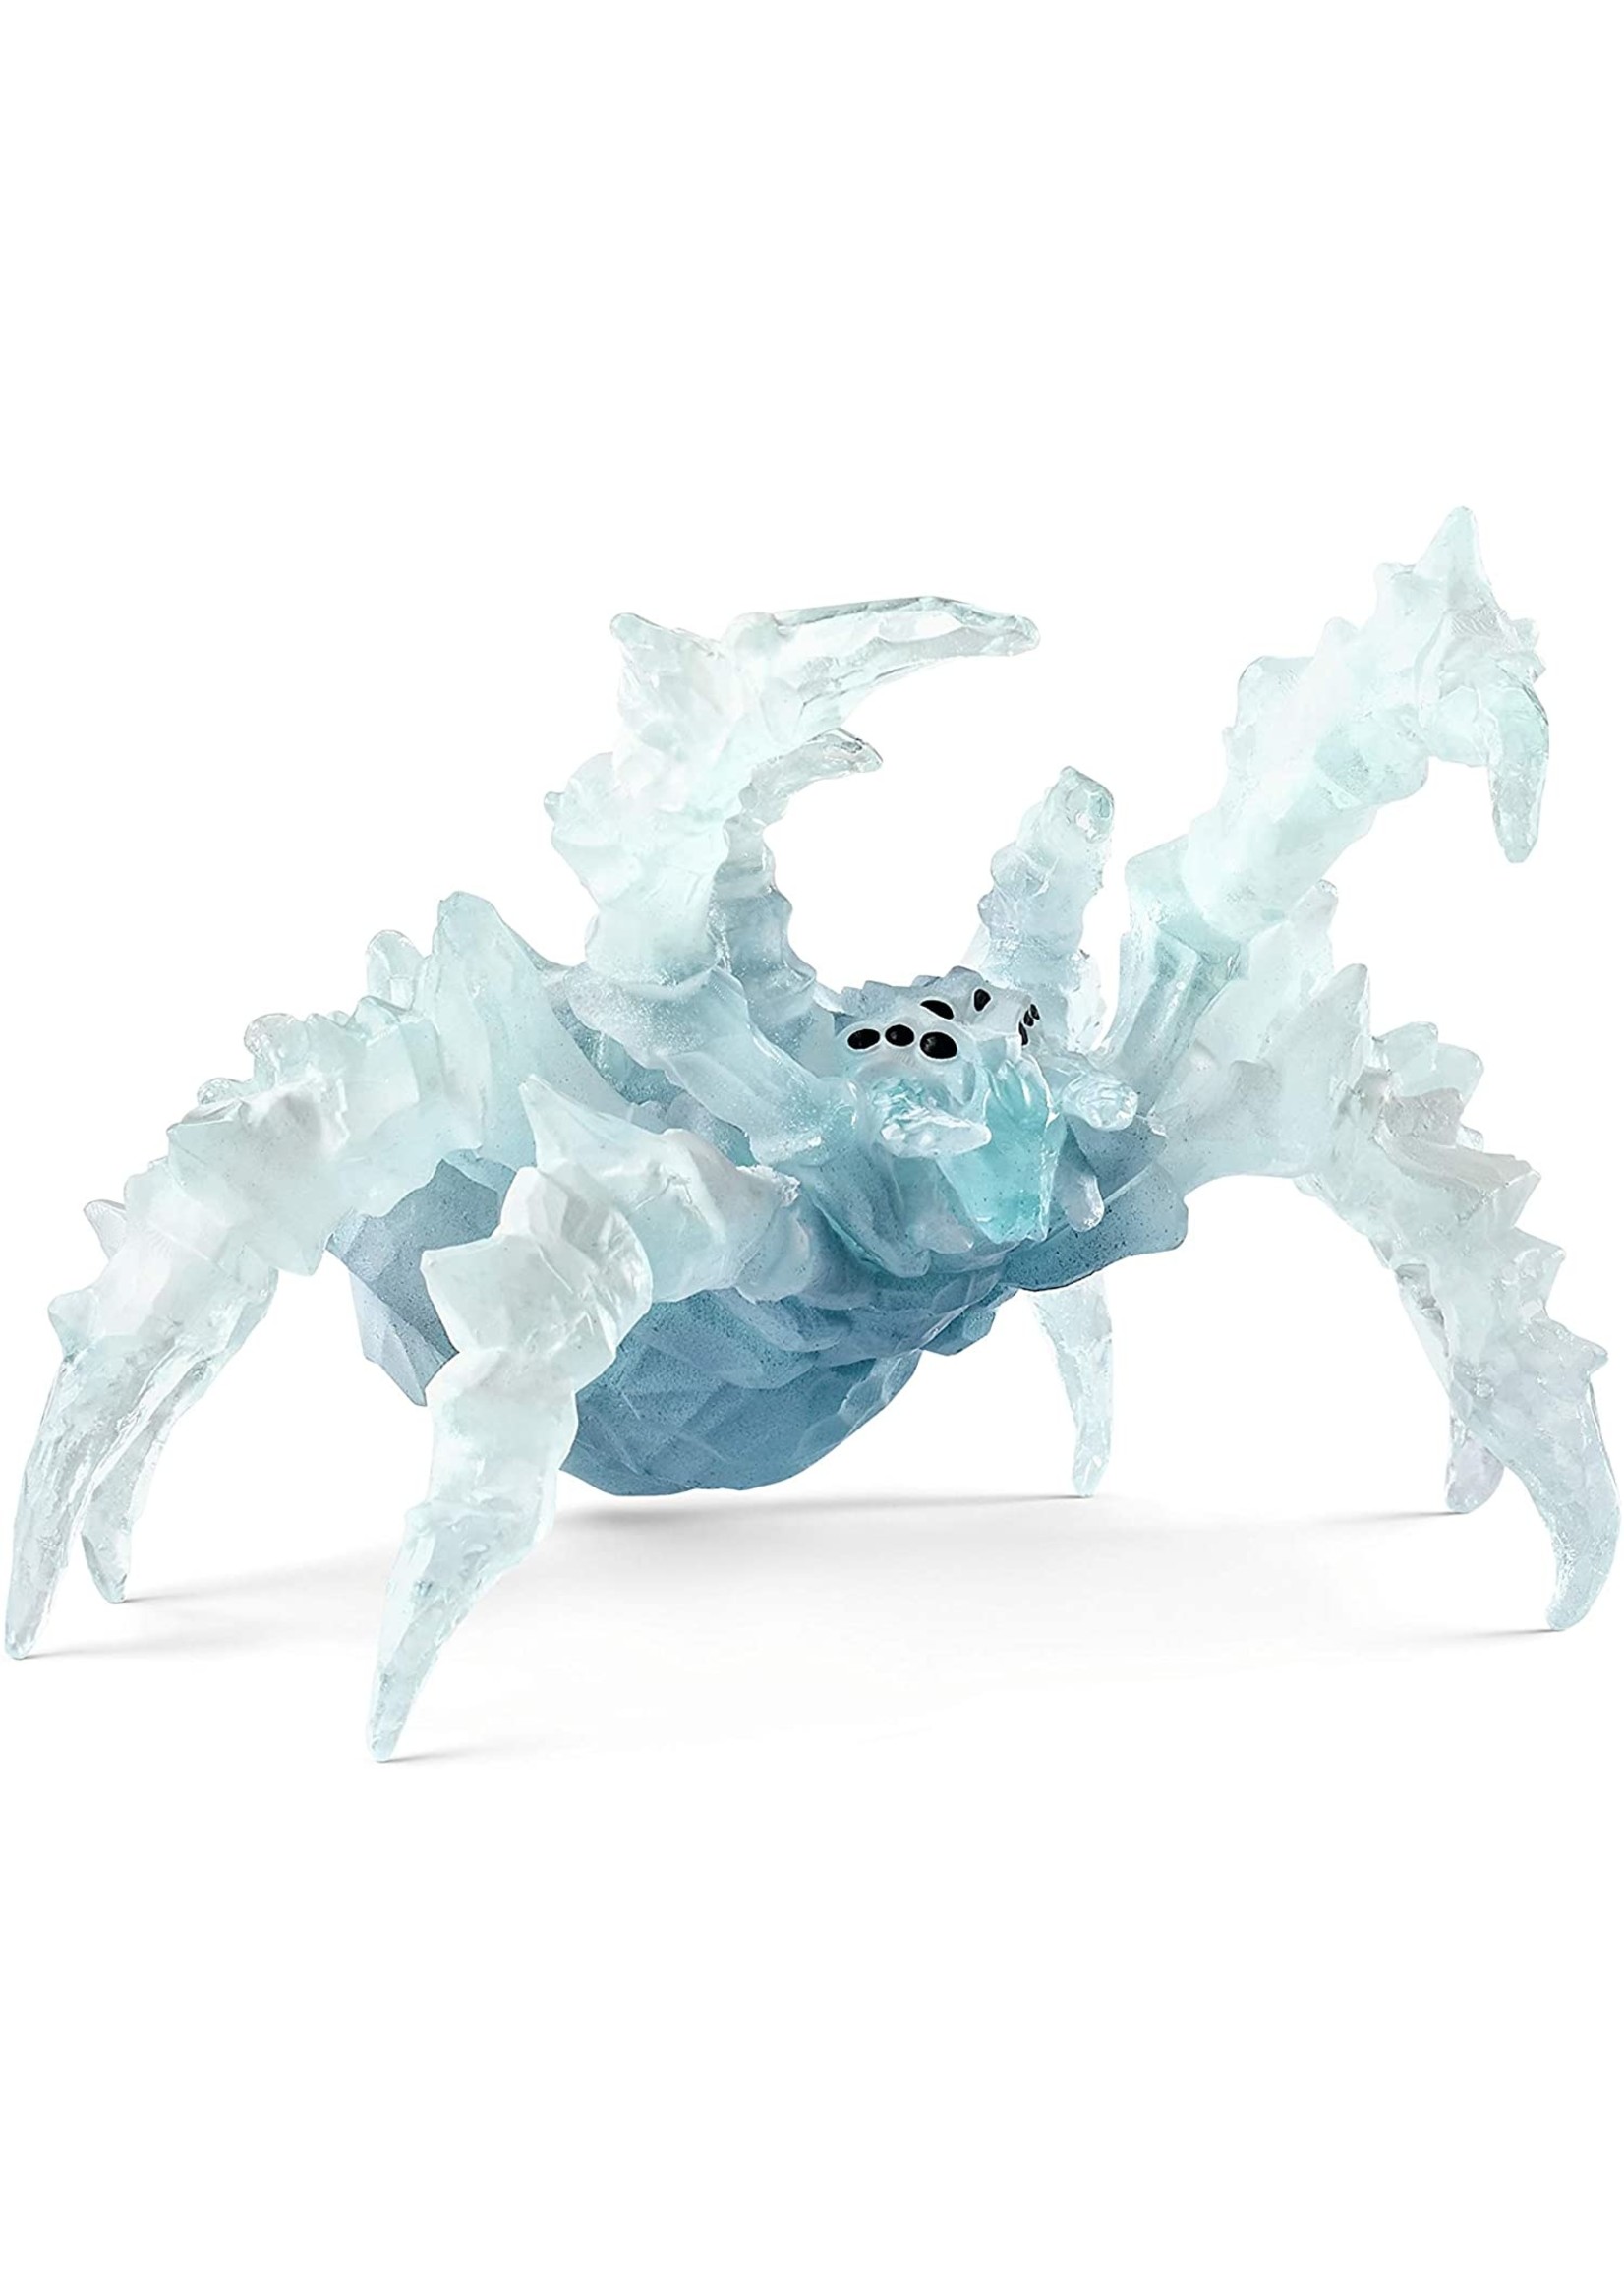 Schleich 42494 - Ice Spider